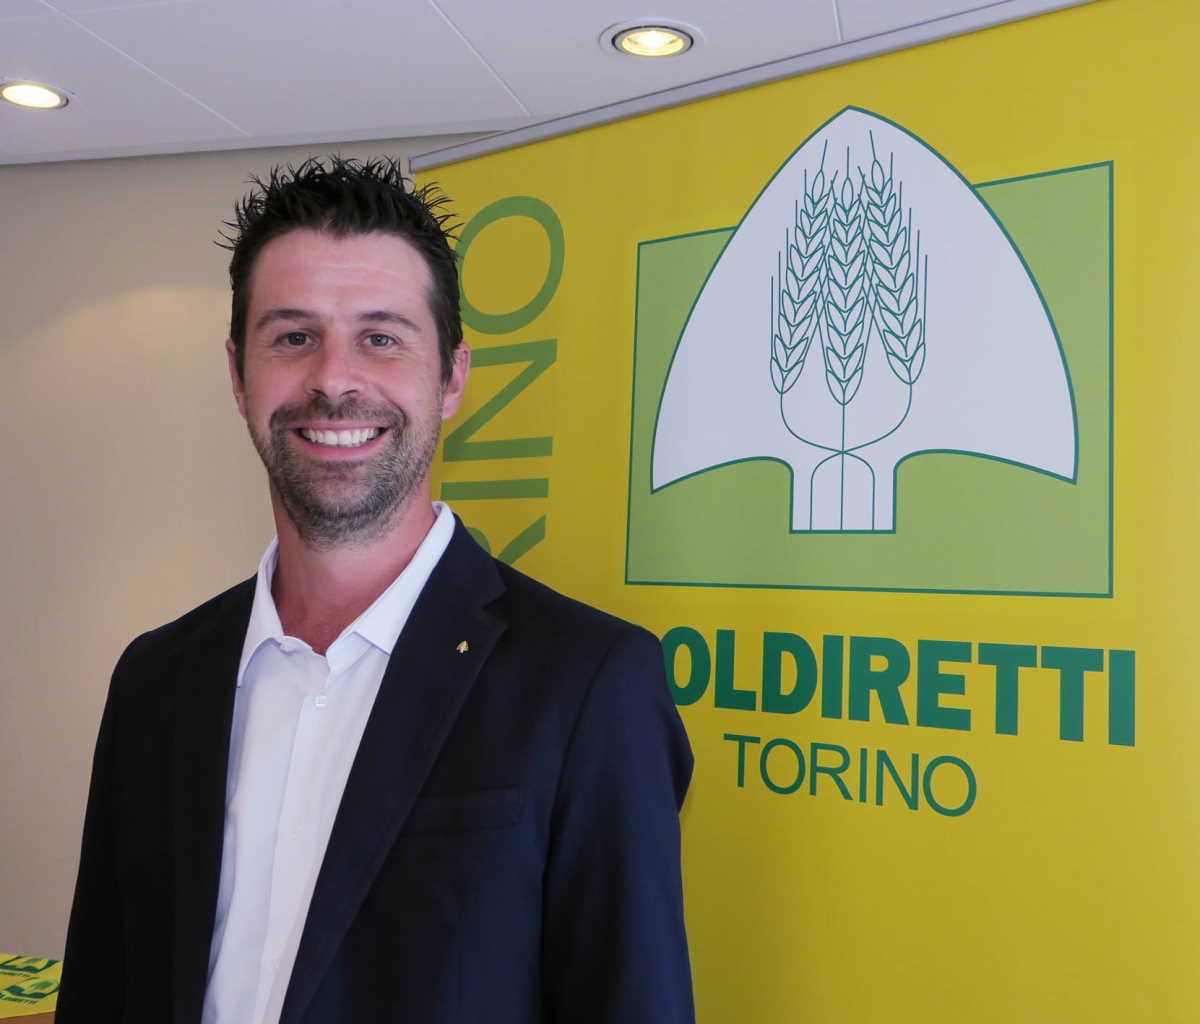 TORINO - Bruno Mecca Cici eletto presidente Coldiretti Torino